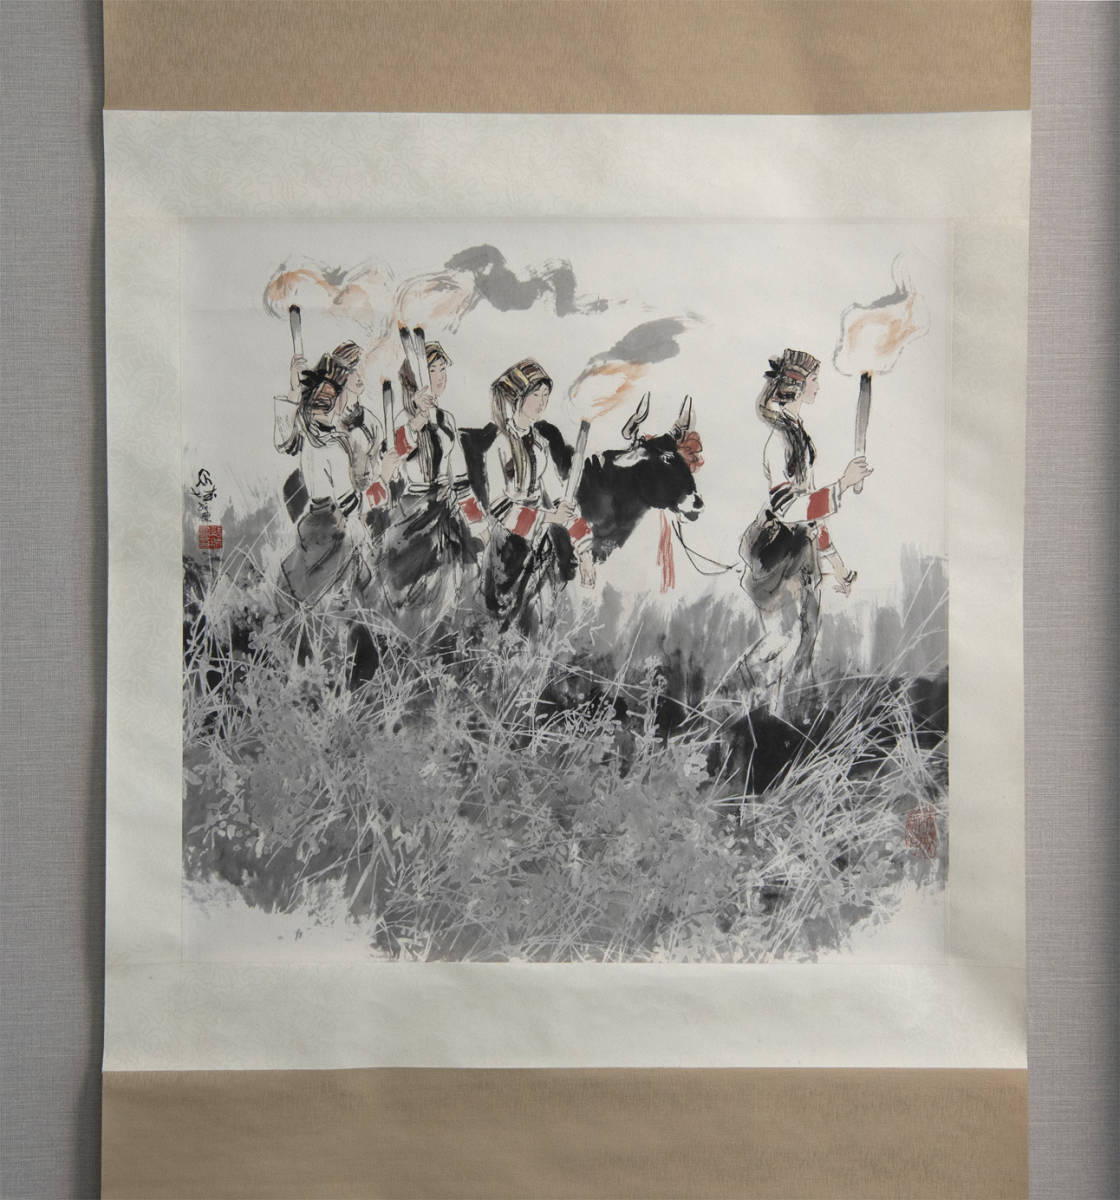 张绍महल, 1988 अलाव, रंगीन पेपरबैक, स्थायी धुरी, चीन जिया डे बीट'प्रदर्शित कृतियाँ प्रामाणिकता की गारंटी चीनी पेंटिंग समकालीन कला, कलाकृति, किताब, लटका हुआ स्क्रॉल